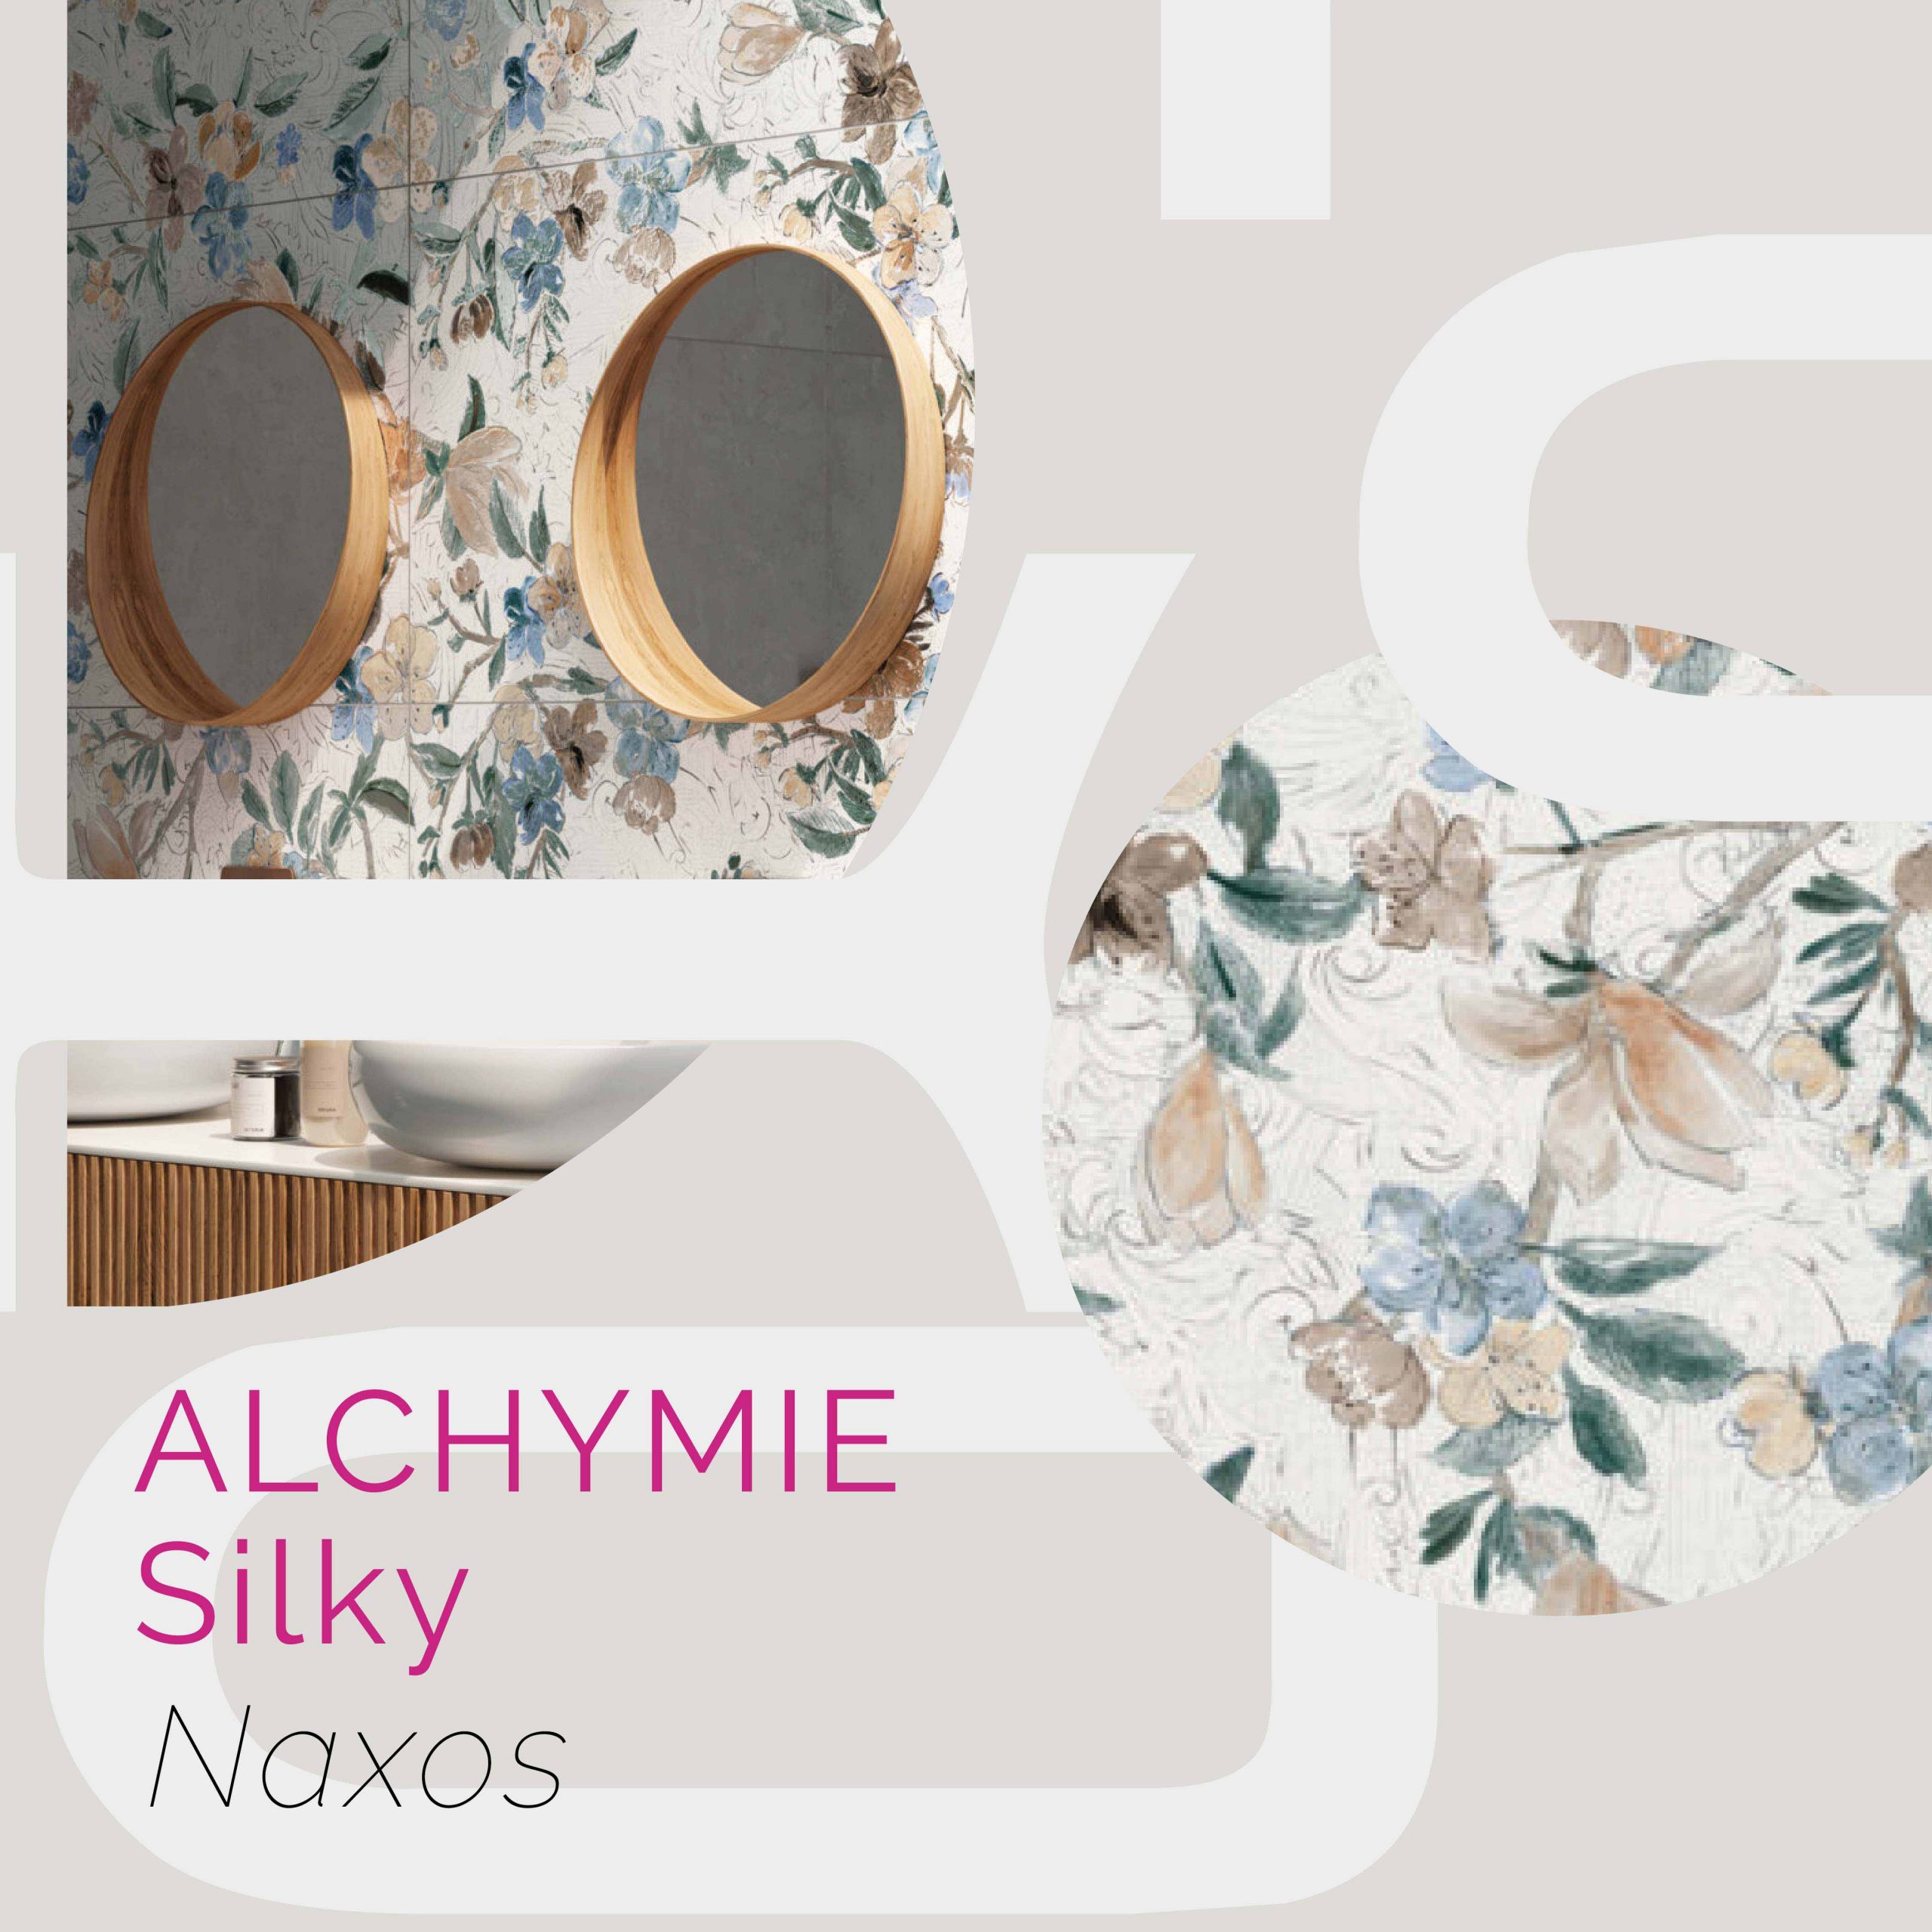 Alchymie Naxos